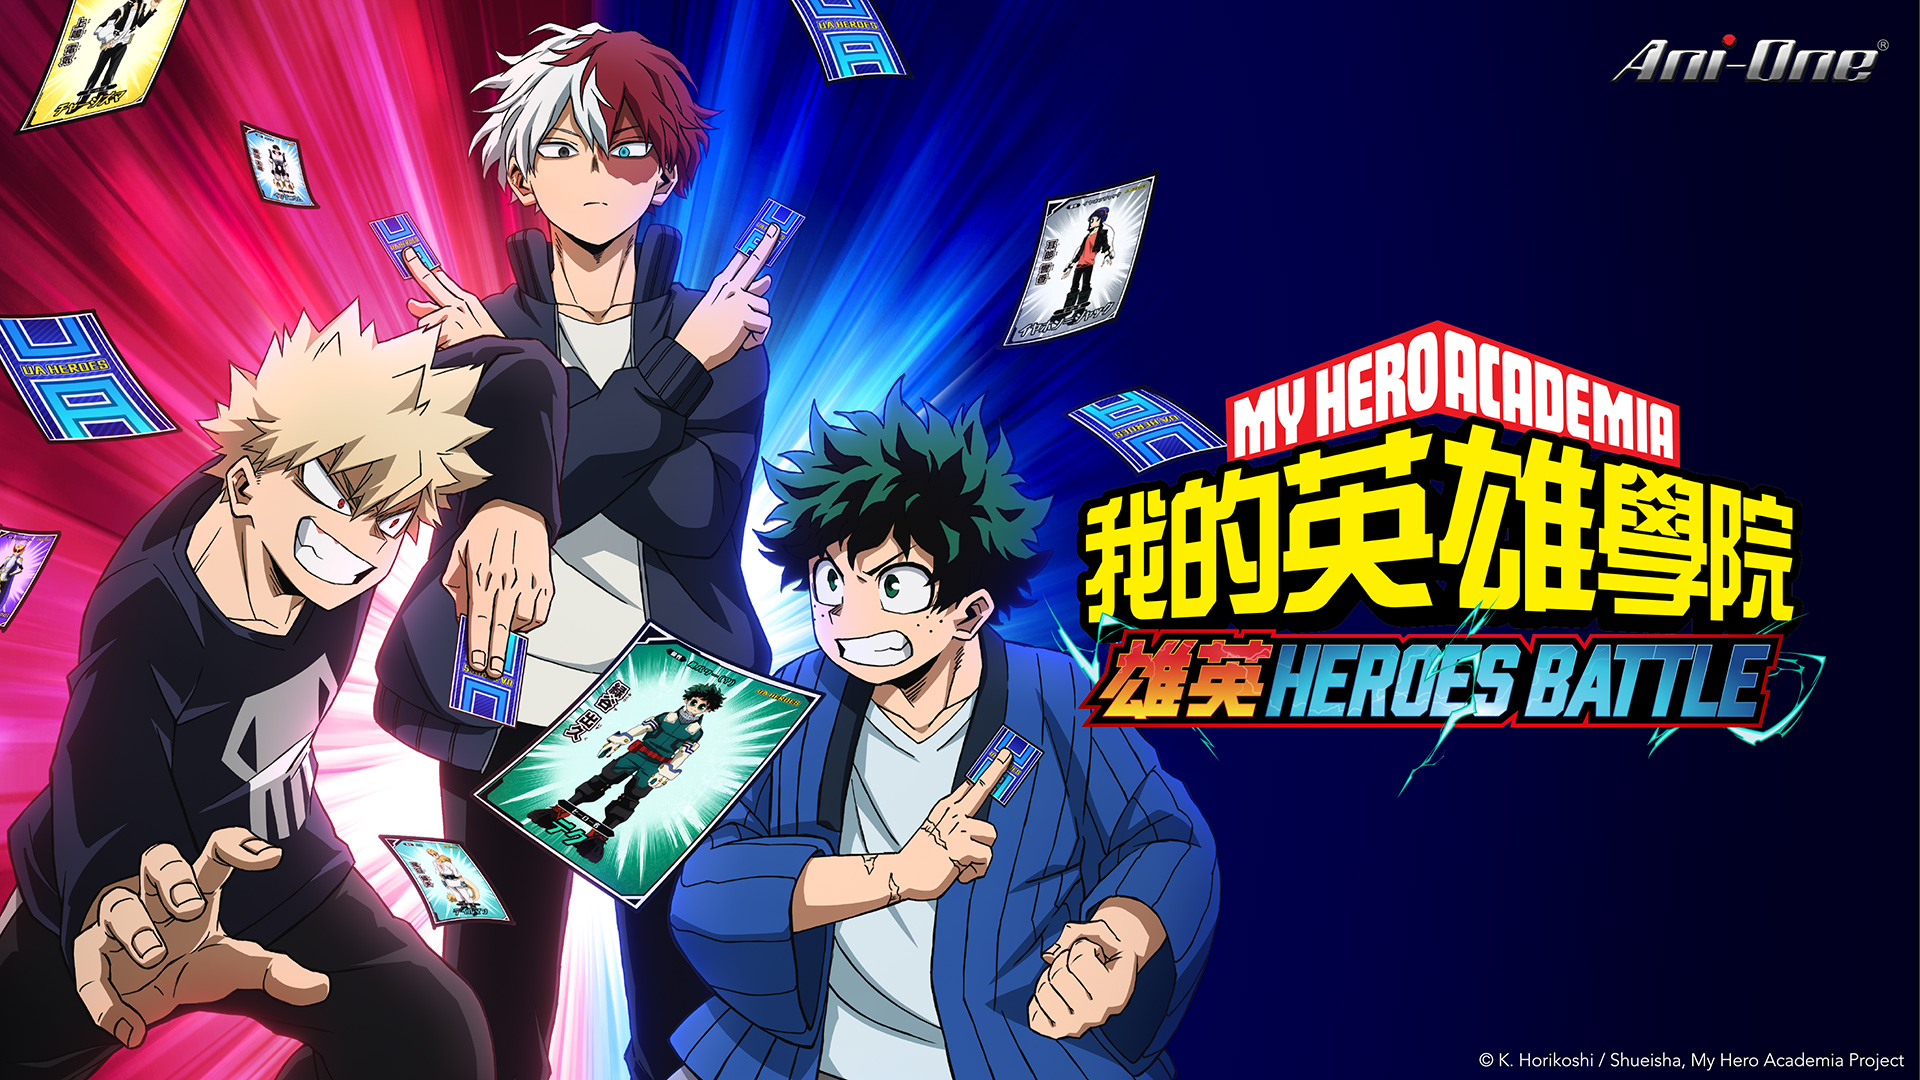 My Hero Academia UA Heroes Battle' chega em outubro aos cinemas japoneses